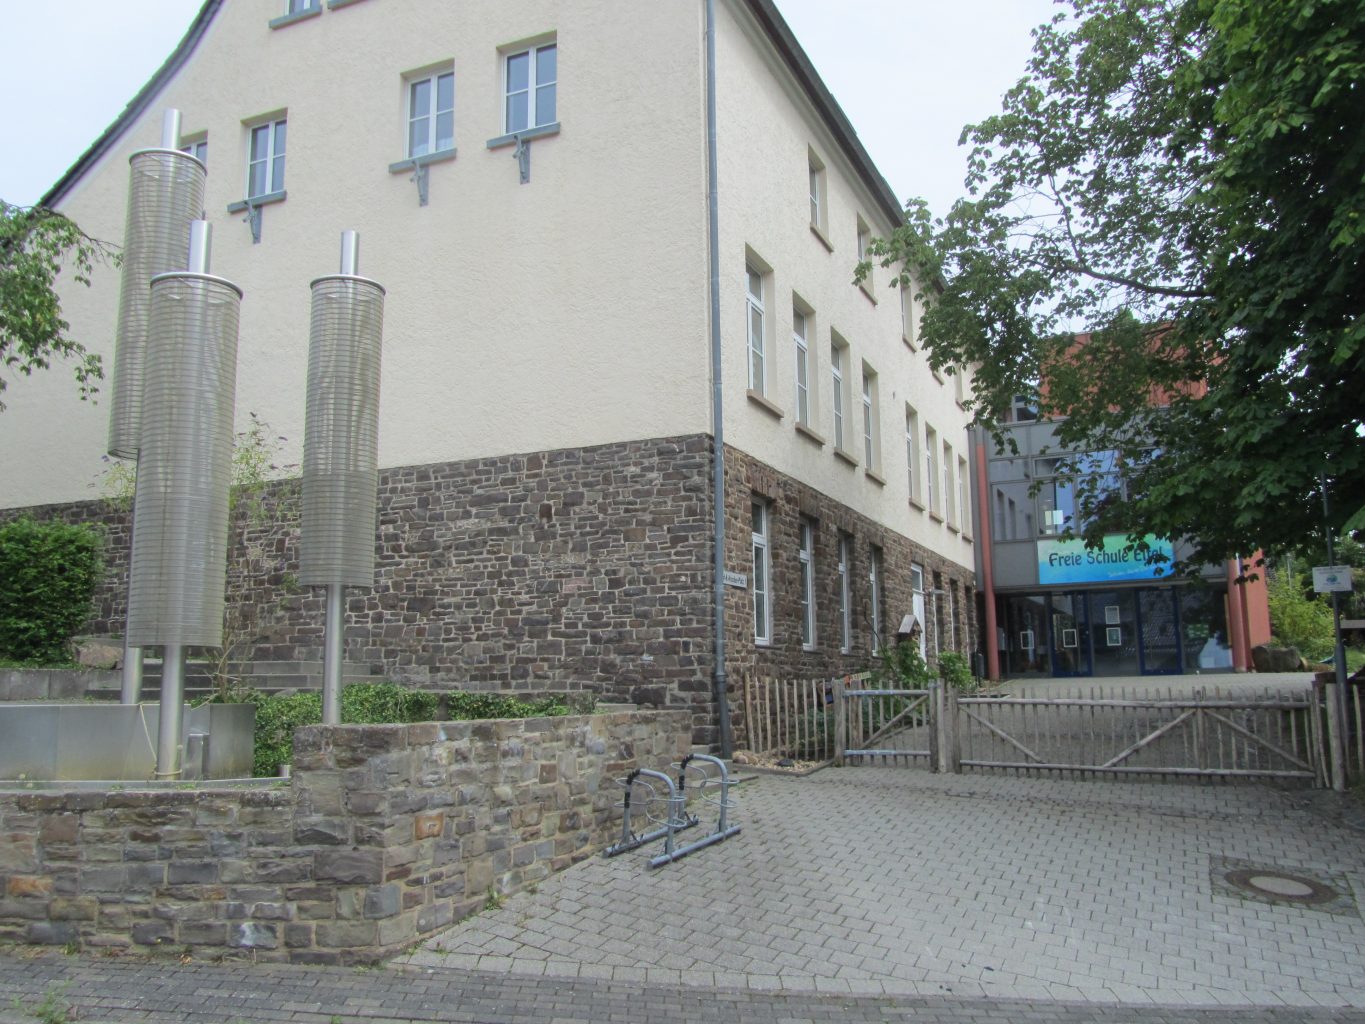 Freie Schule Eifel in Heimbach